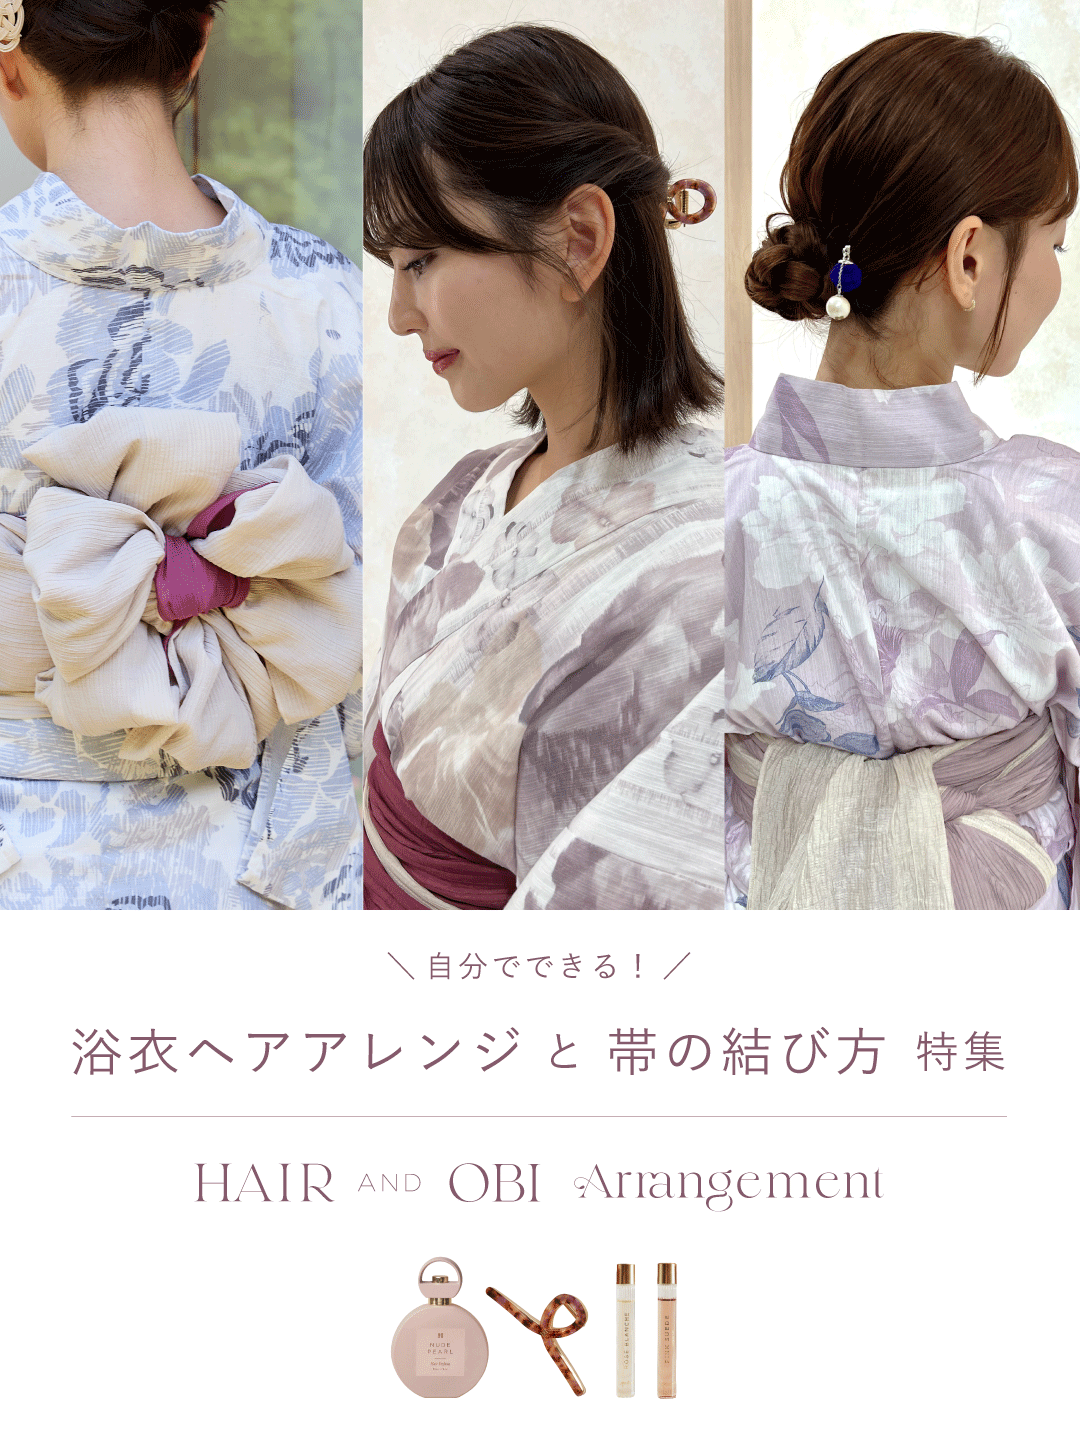 Perfect for Yukata Hair & Obi Arrangement